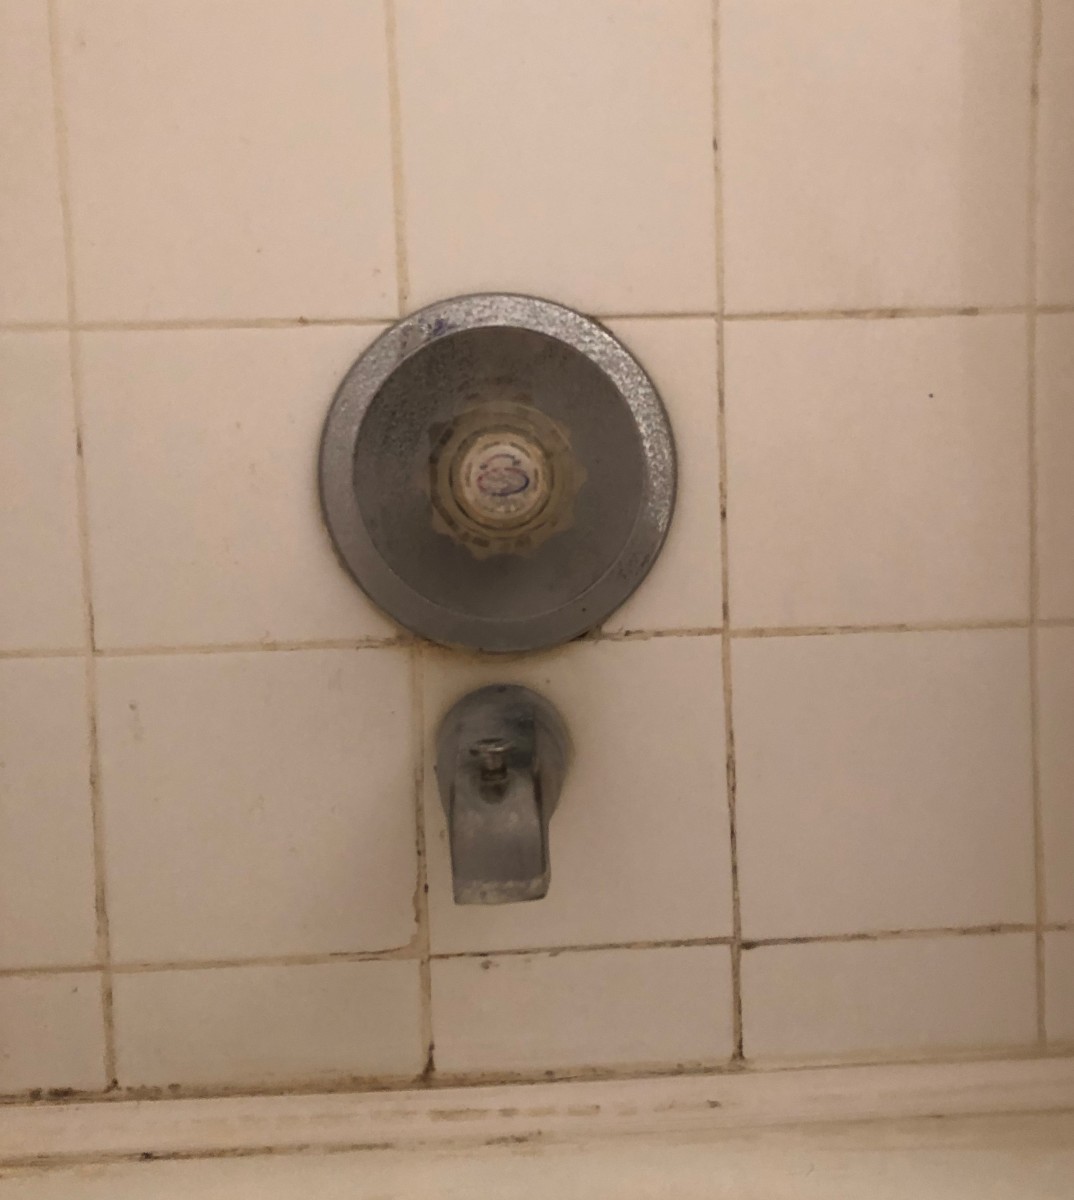 Replace A Single Handle Shower Valve, Bathtub Faucet Valve Stem